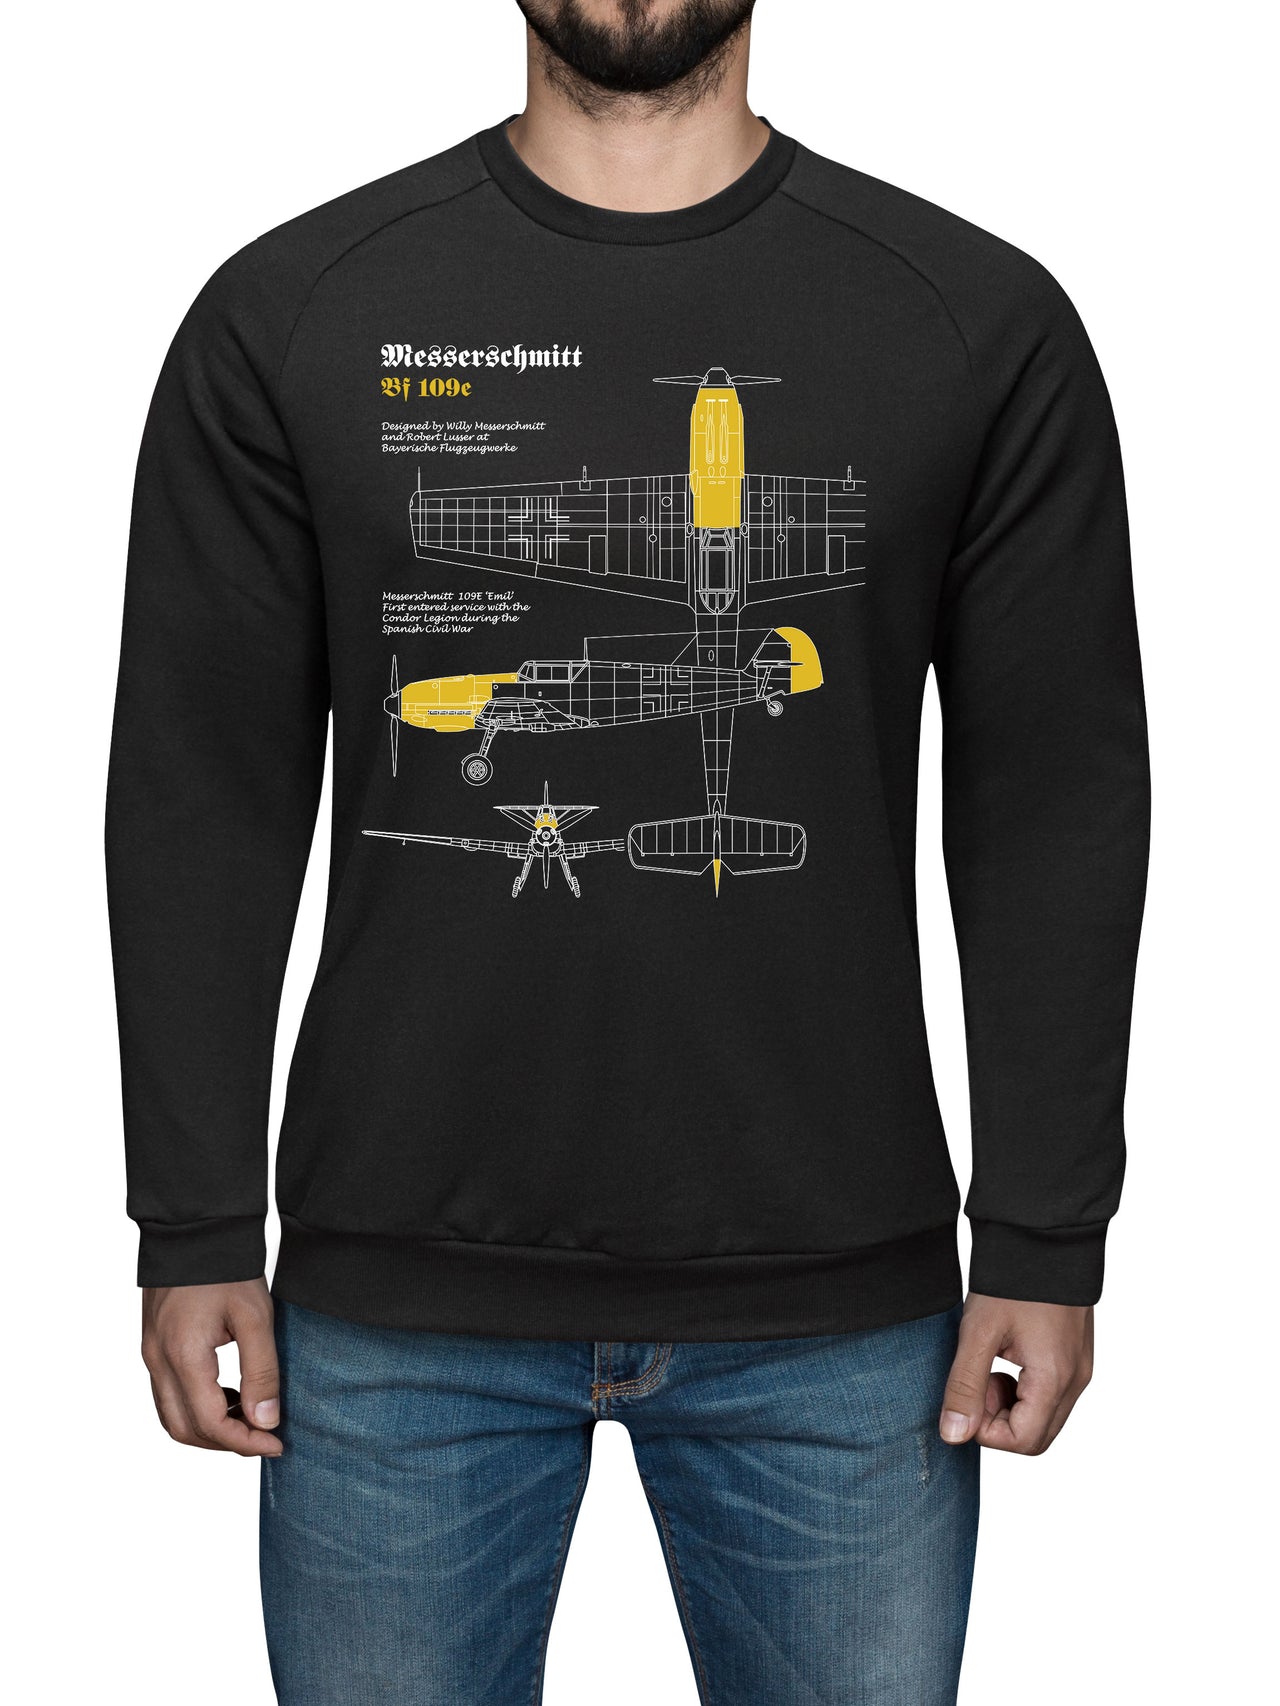 Messerschmitt 109 - Sweat Shirt